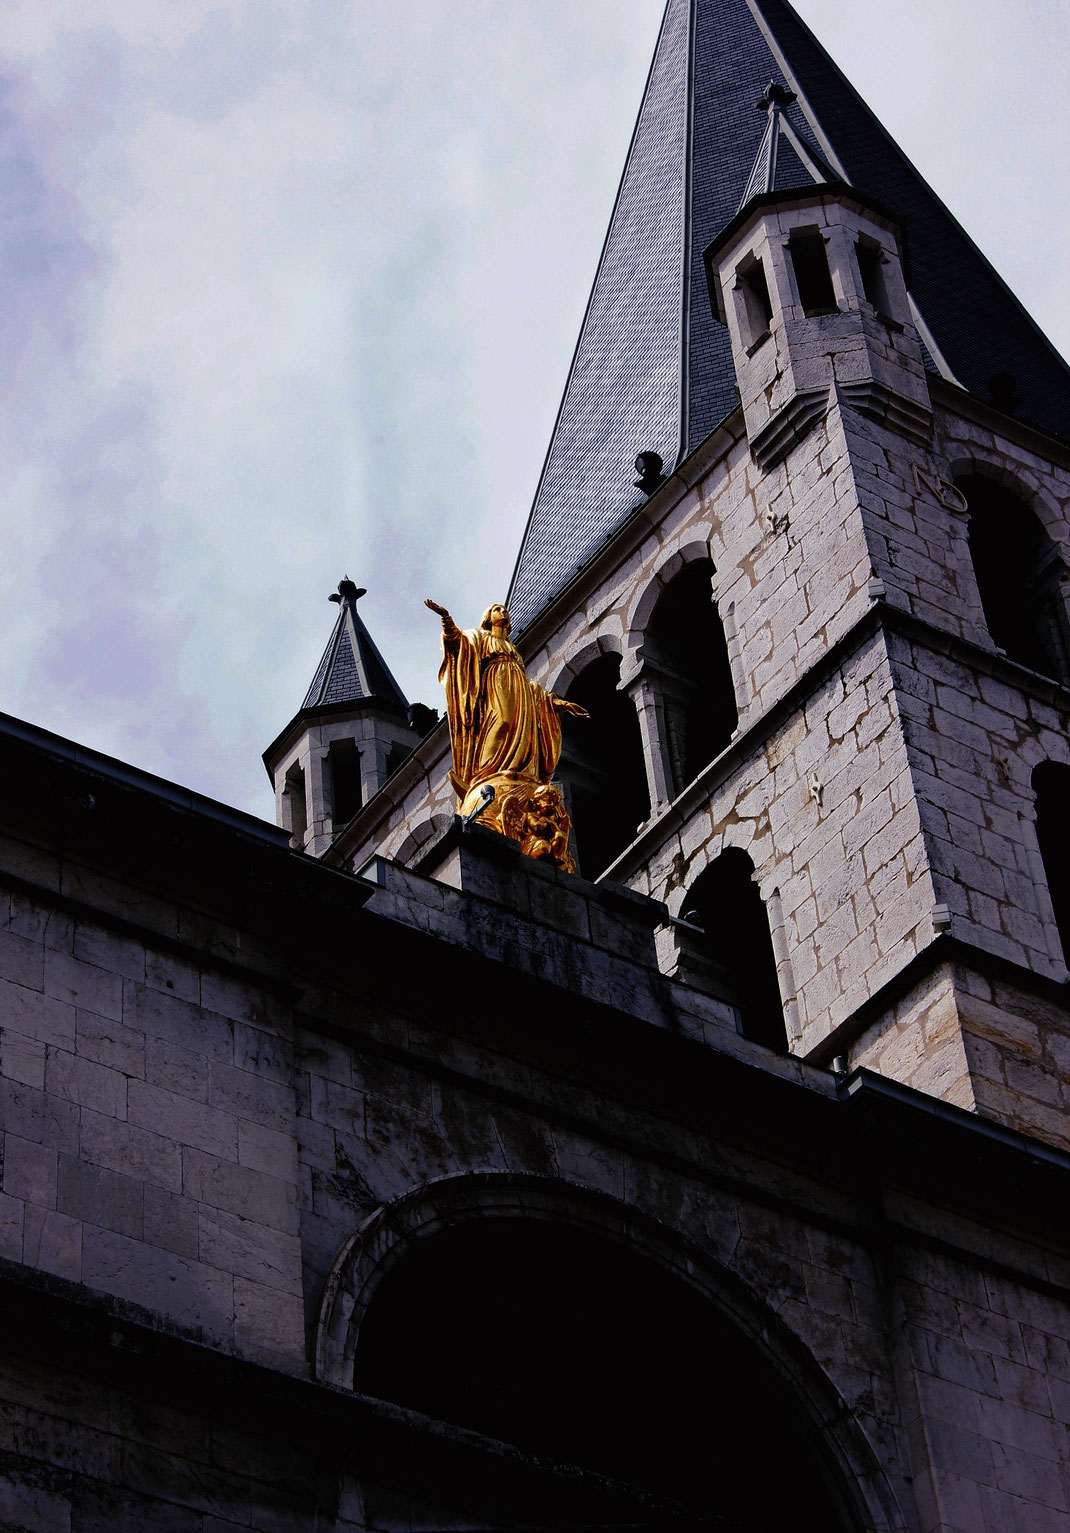 église Notre-Dame-de-Liesse d'Annecy Travel France Roadtrip Photography roadtrip laura deberle fotografie dokumentation